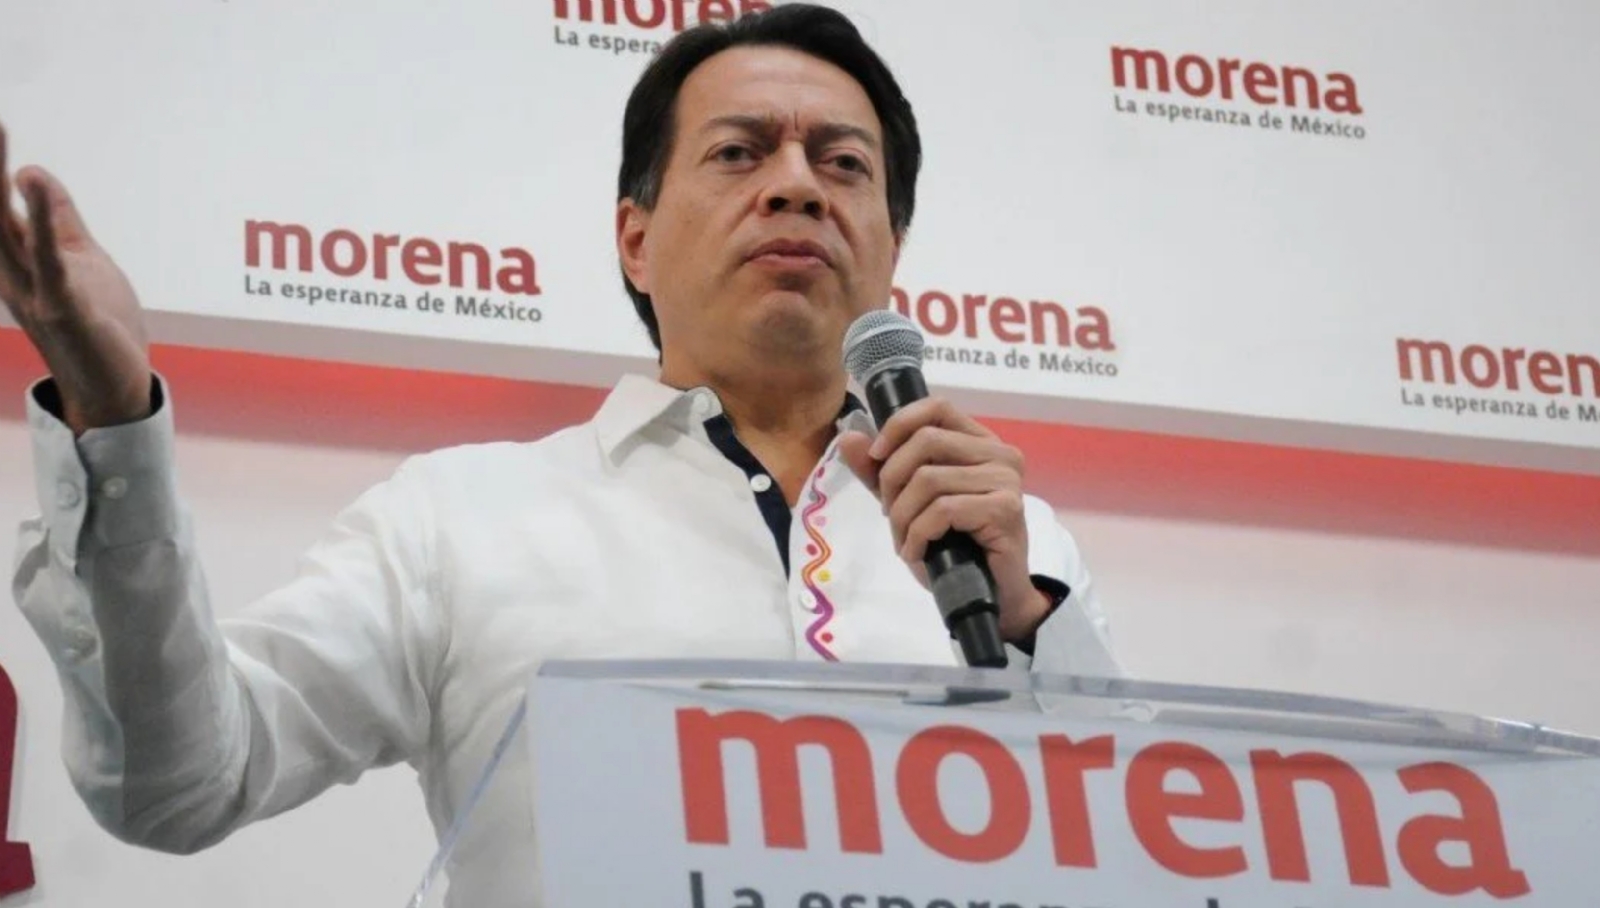 La convocatoria fue dada a conocer por Mario Delgado, presidente de Morena